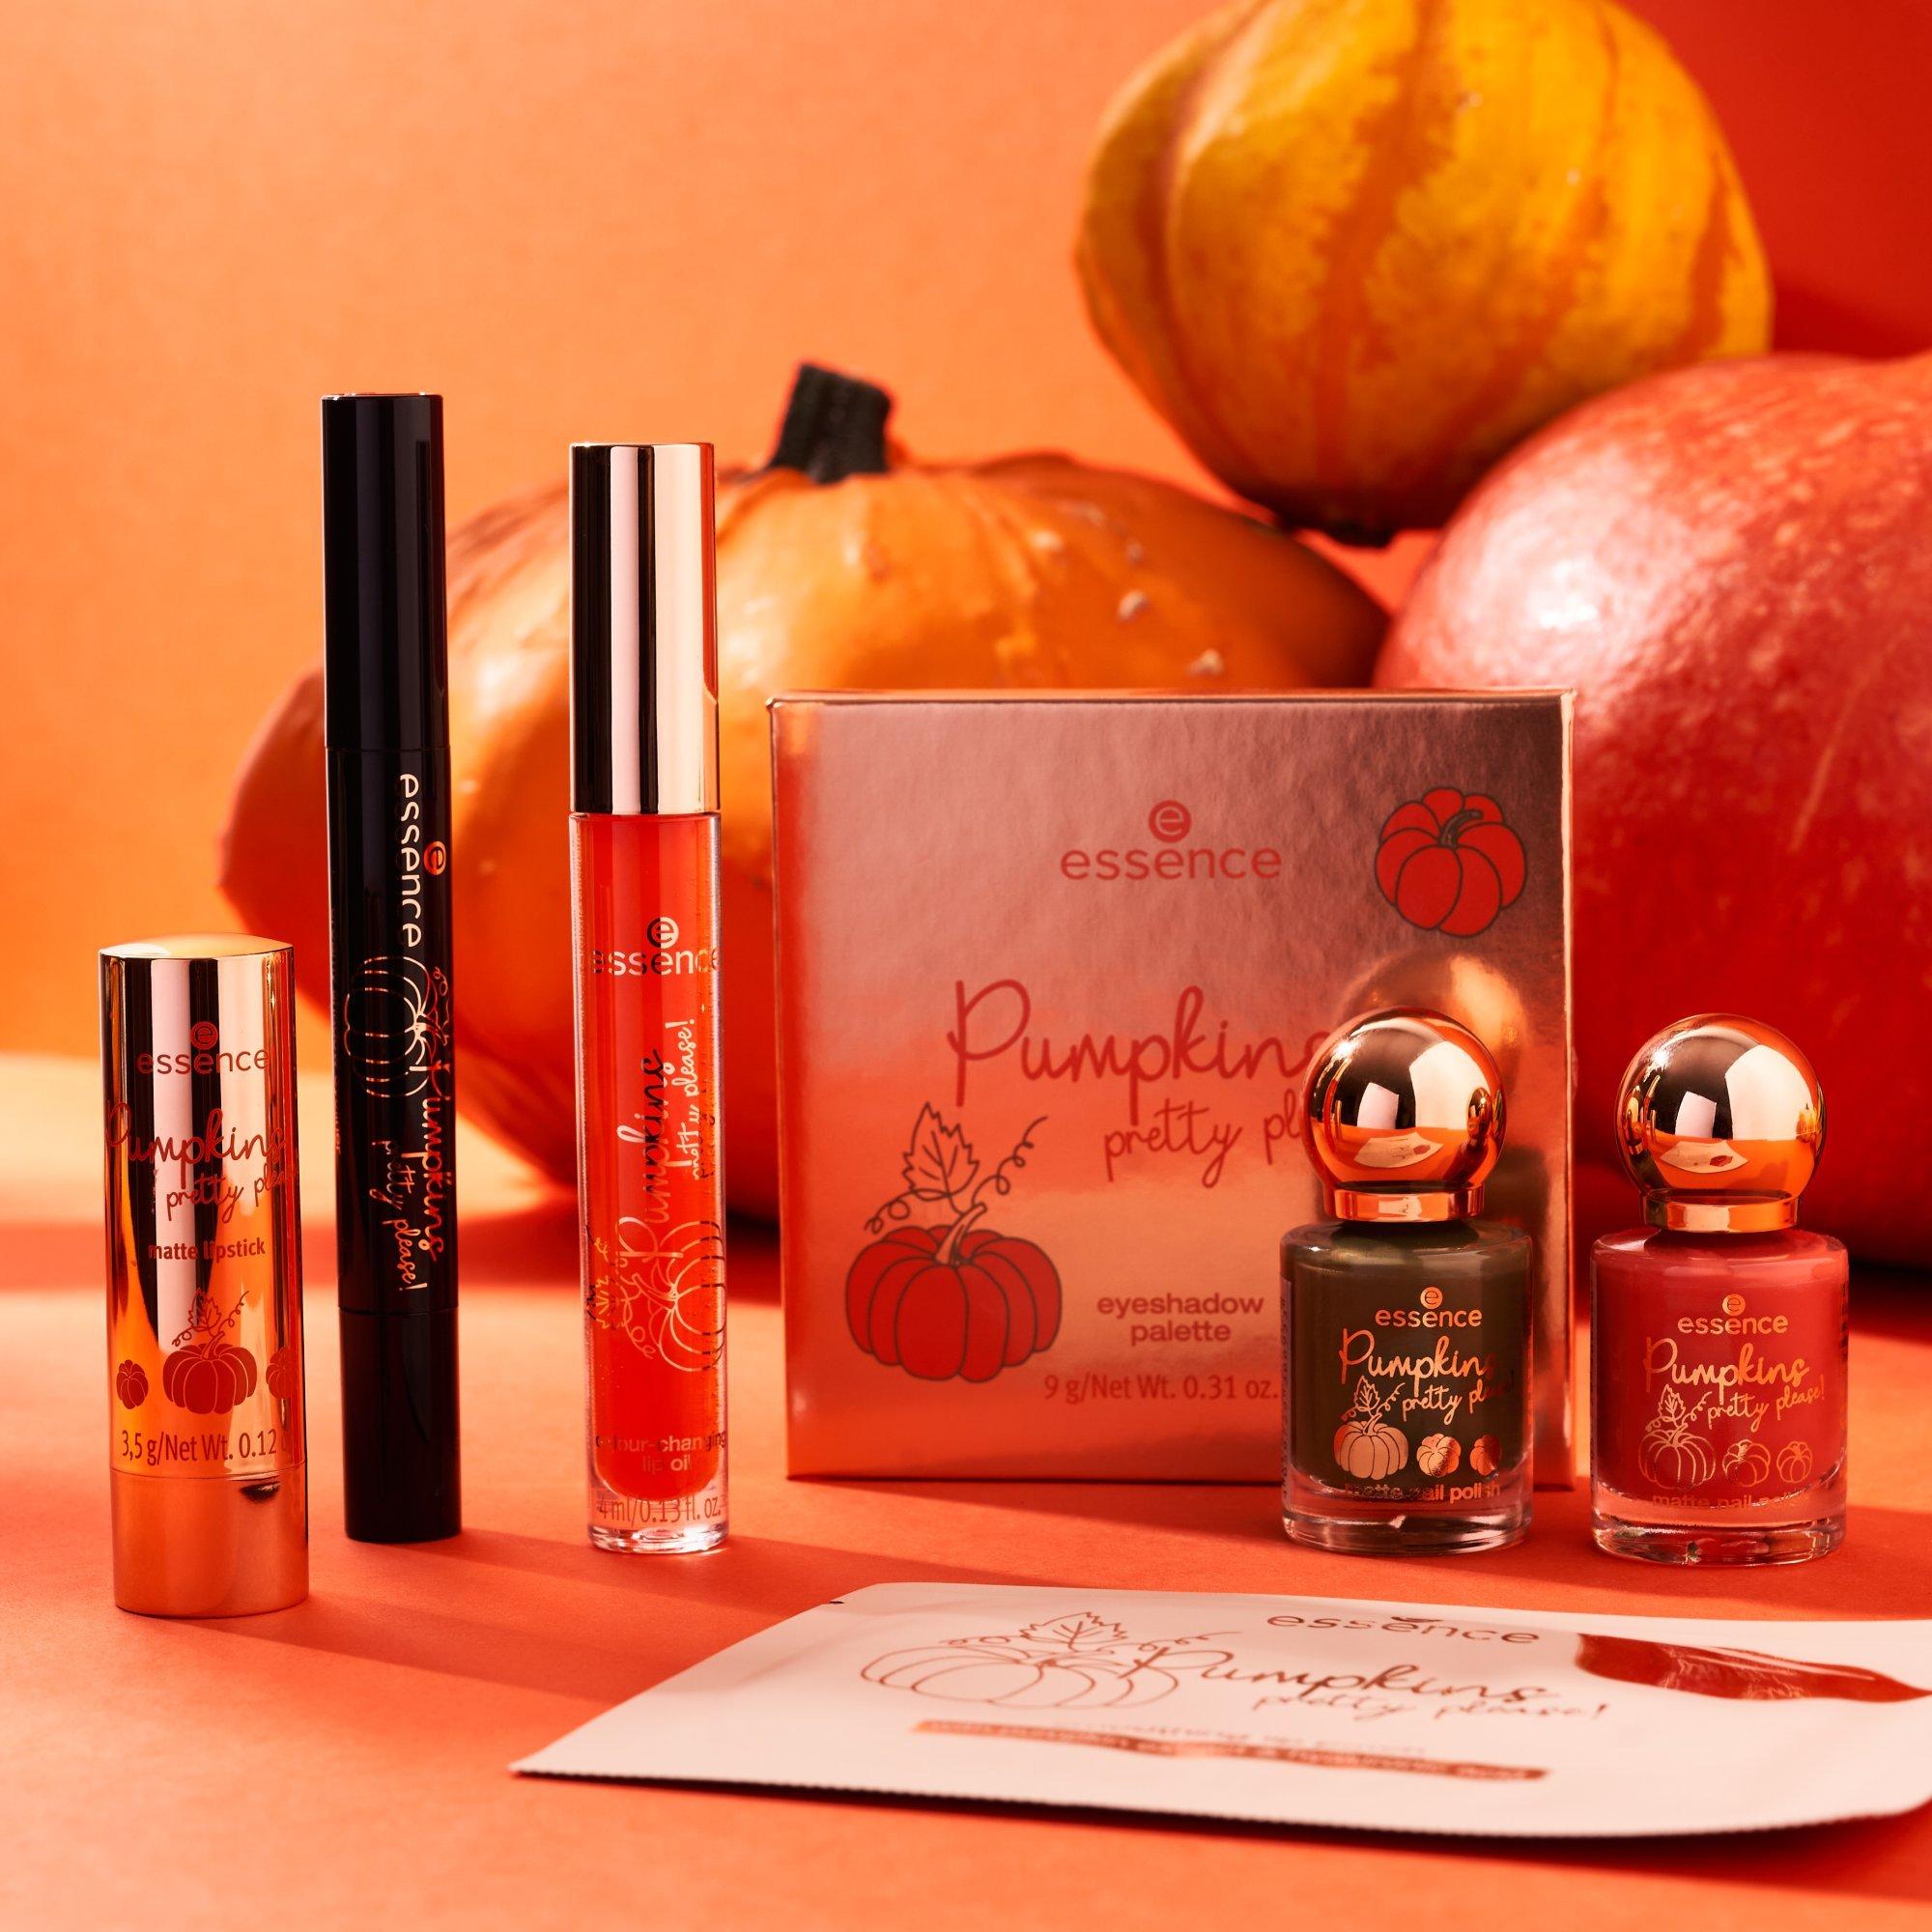 Pumpkins pretty please! Väriä vaihtava huuliöljy